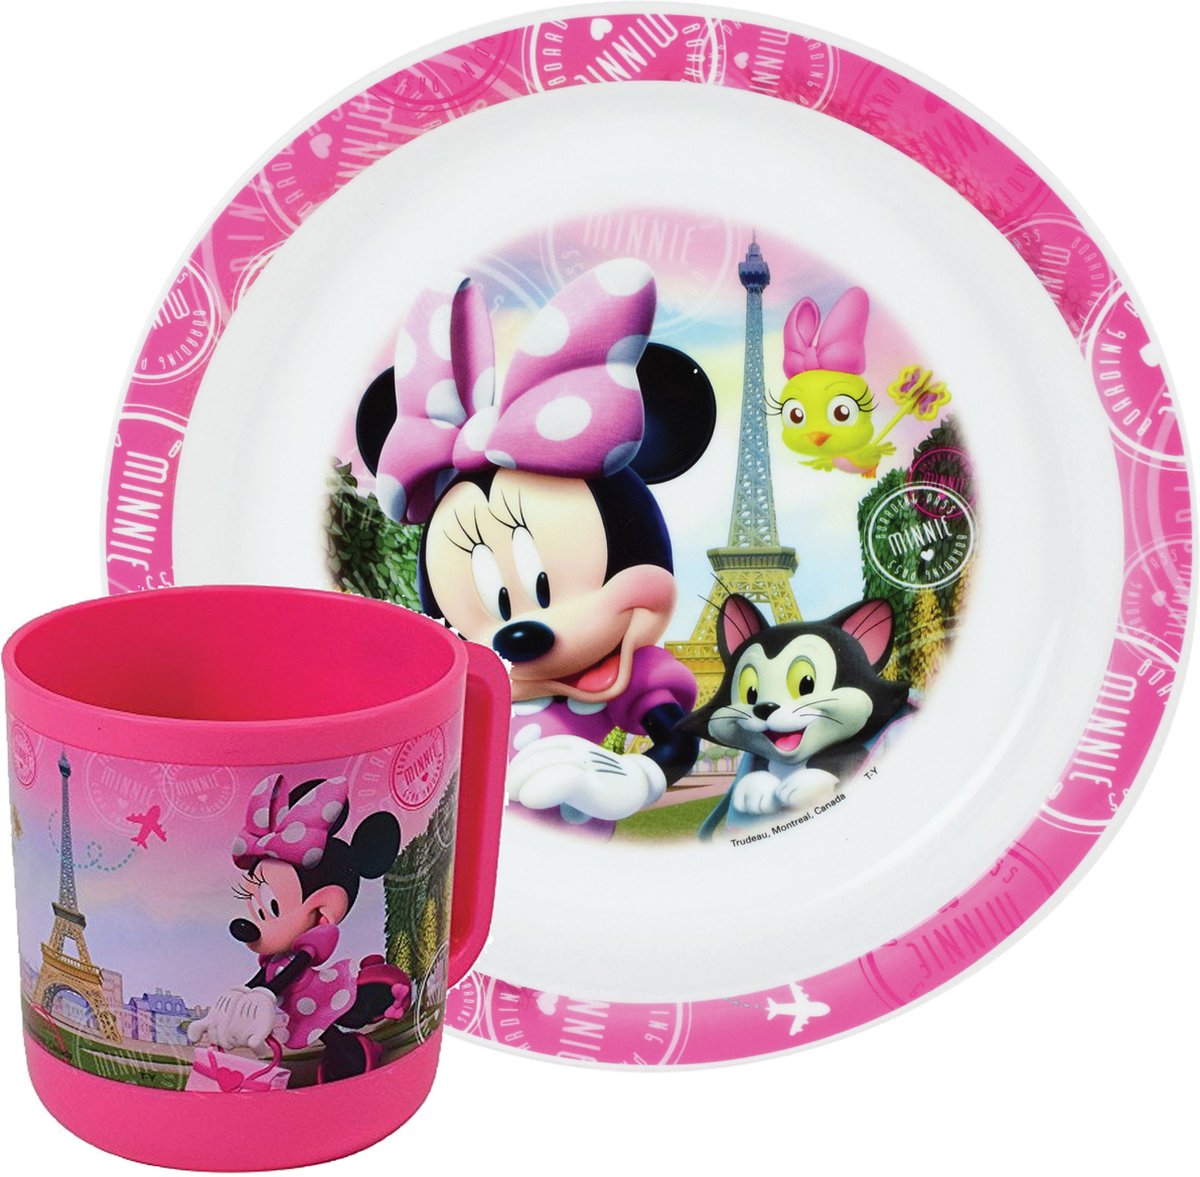 2x Kinder ontbijt set Disney Minnie Mouse 2-delig van kunststof